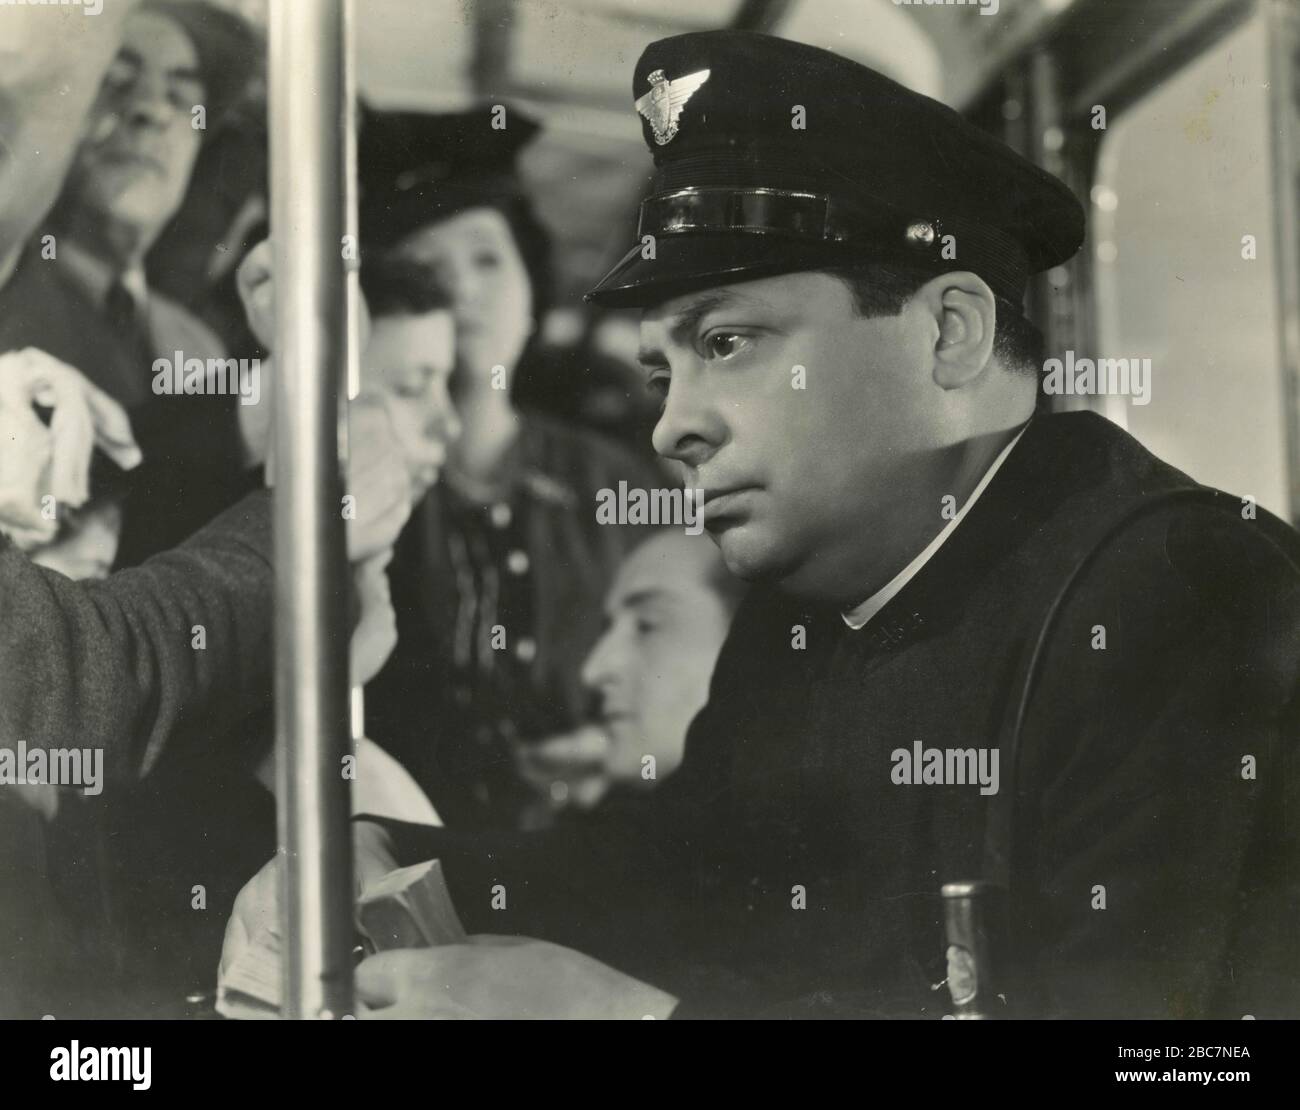 Acteur italien Aldo Fabrizi dans le film Avanti c'è posto (avant le Foreman), Italie 1942 Banque D'Images